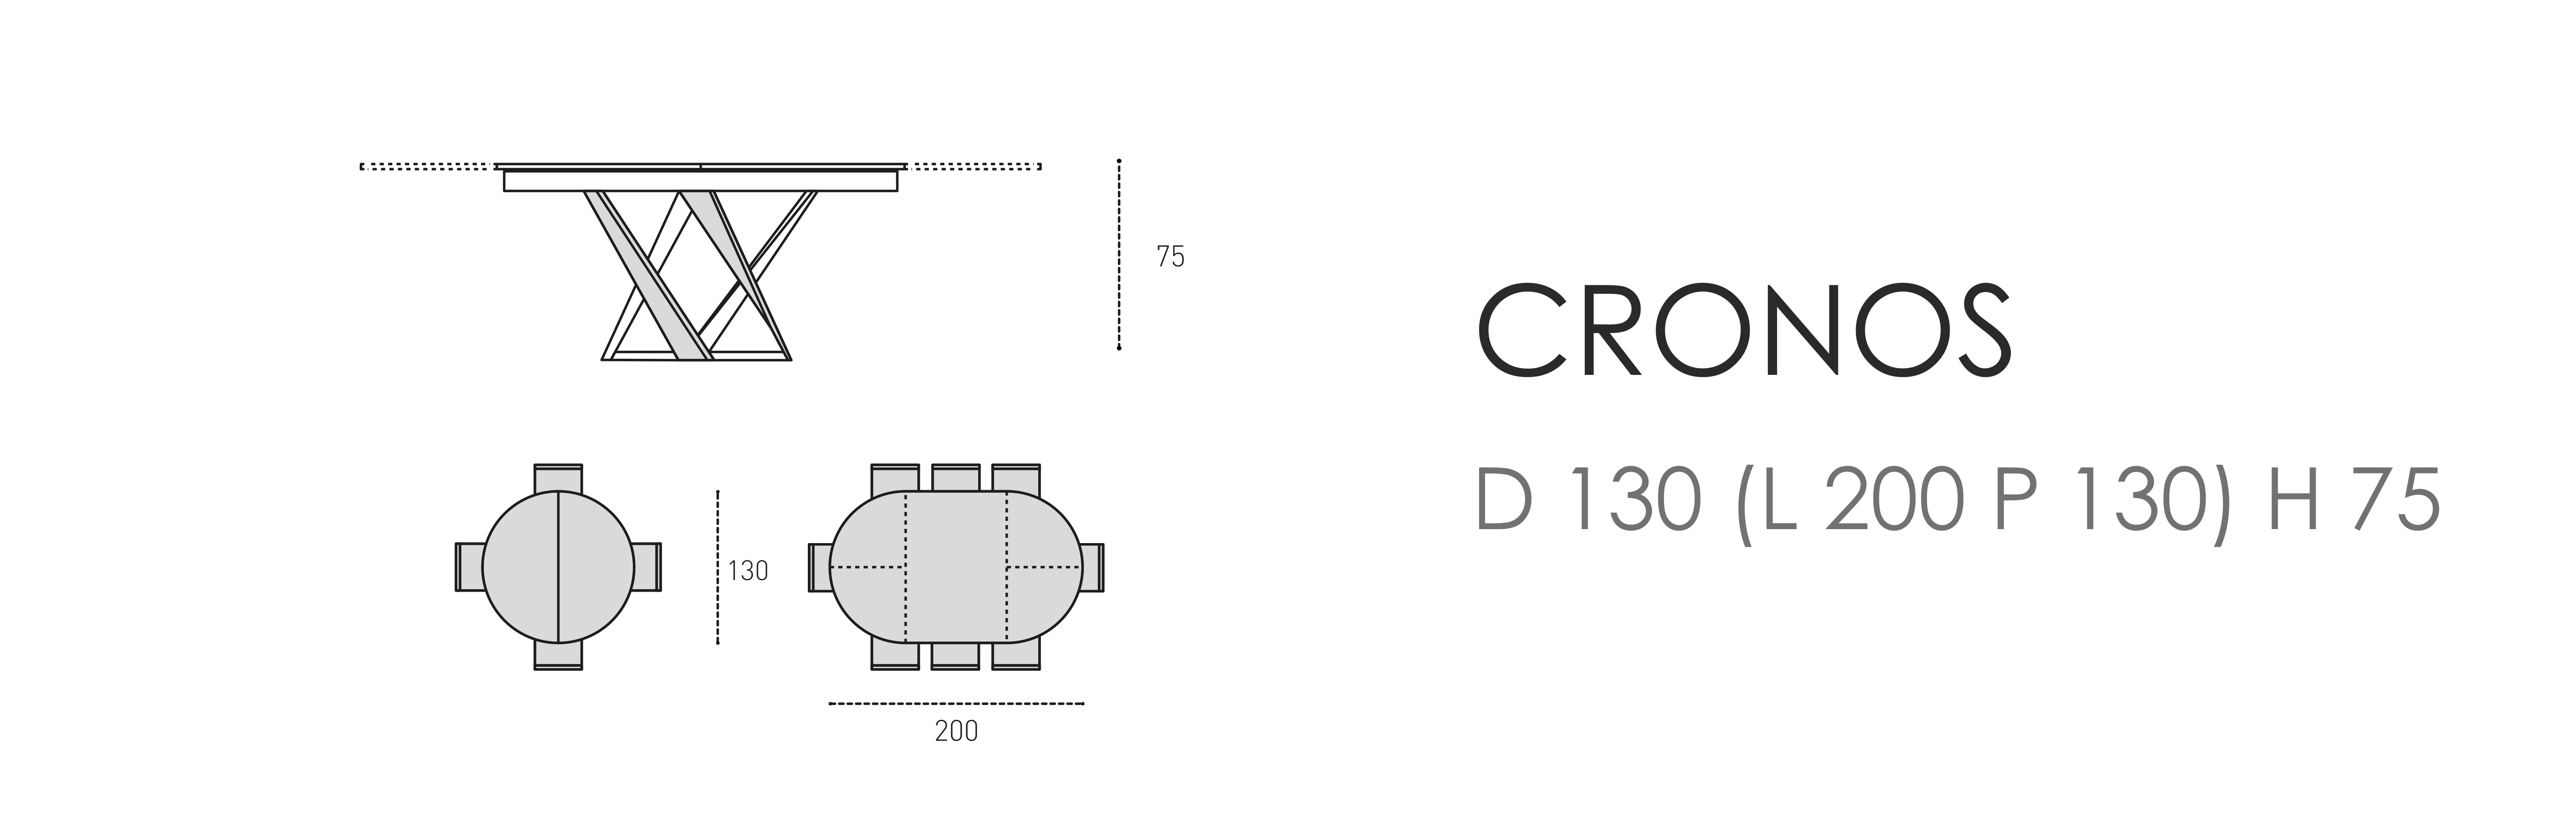 Cronos D 130 (L 200 P 130) H 75